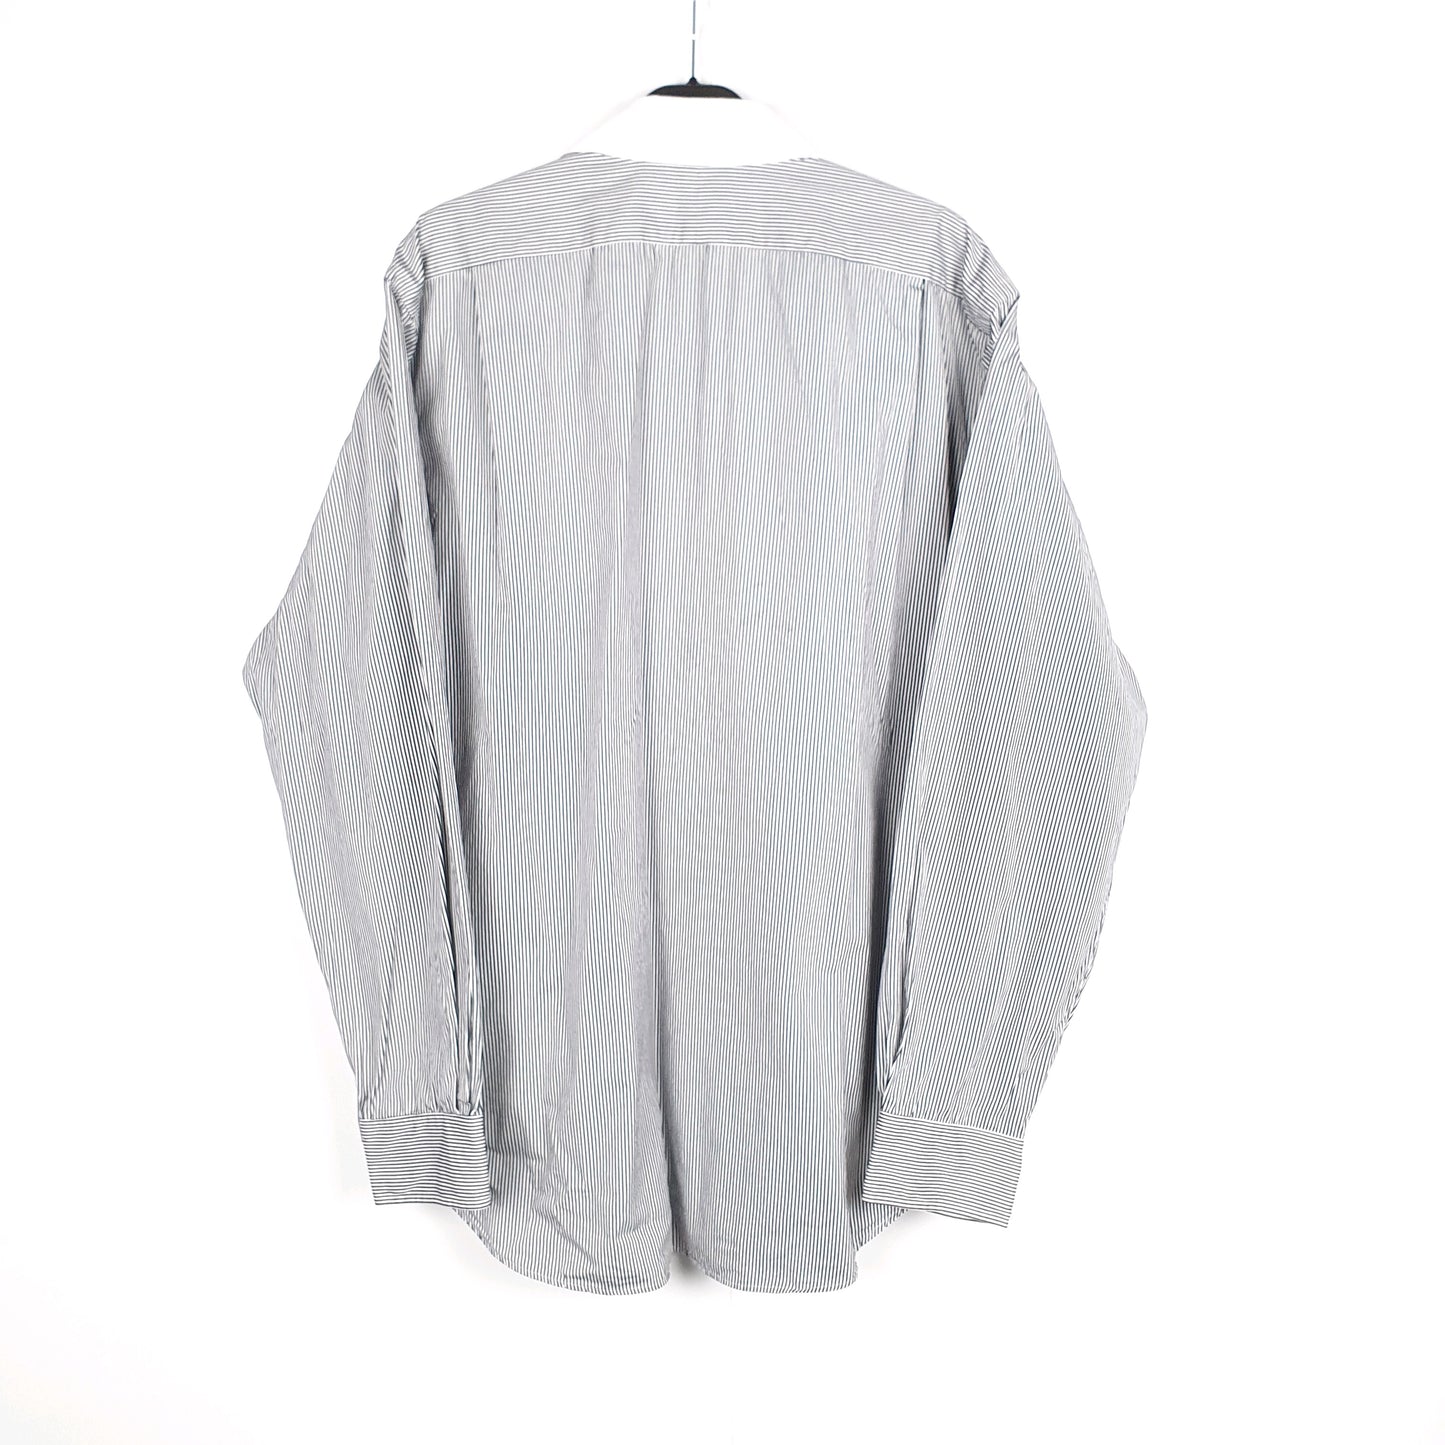 Polo Ralph Lauren Long Sleeve Striped Shirt